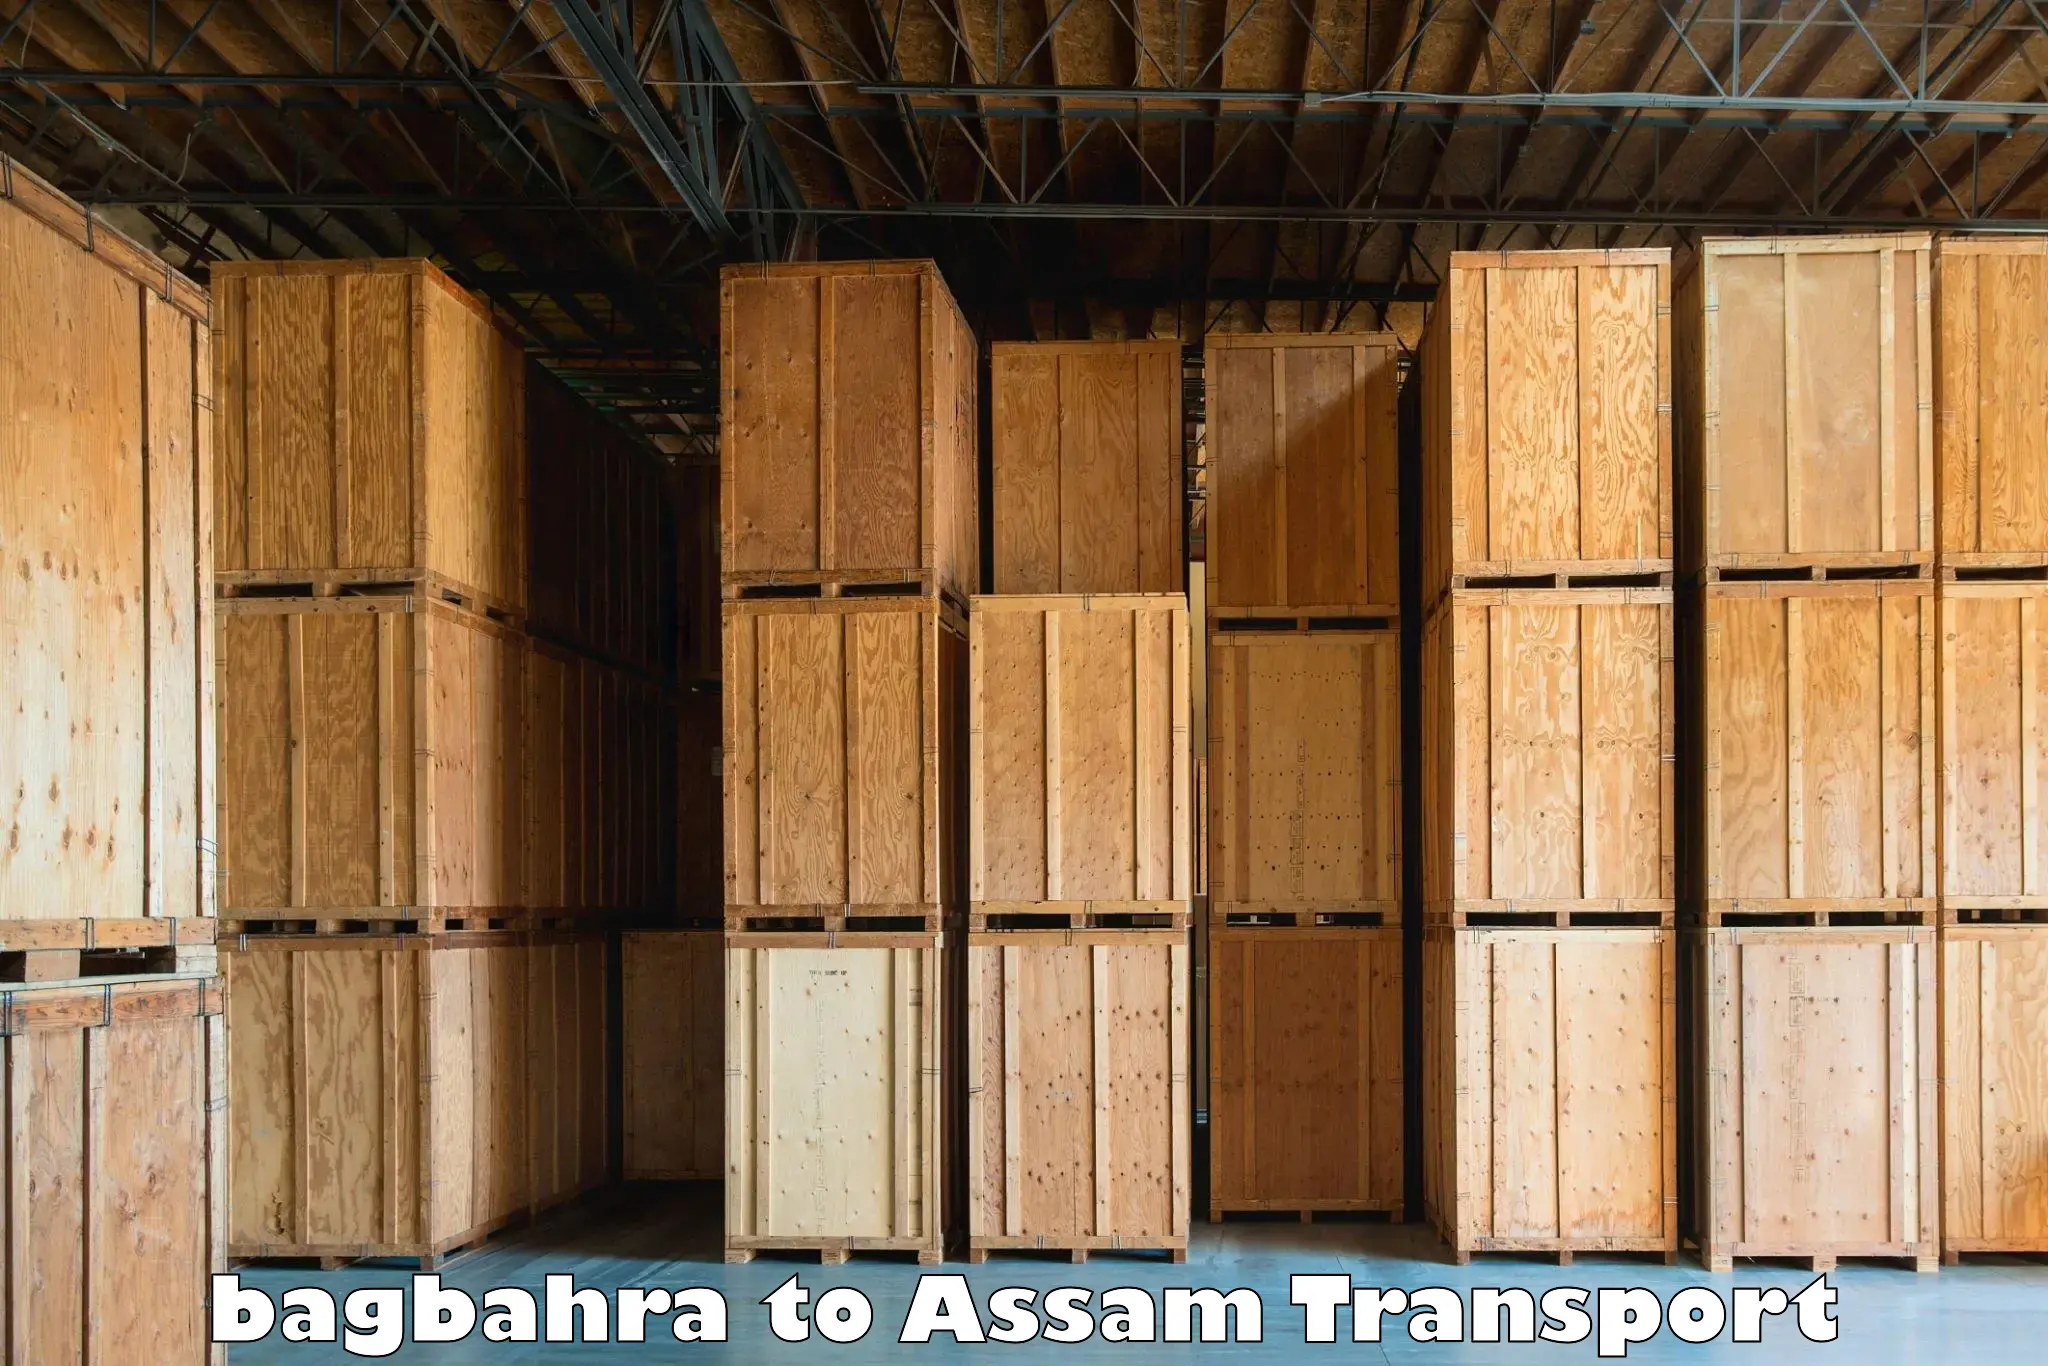 Commercial transport service bagbahra to Karimganj